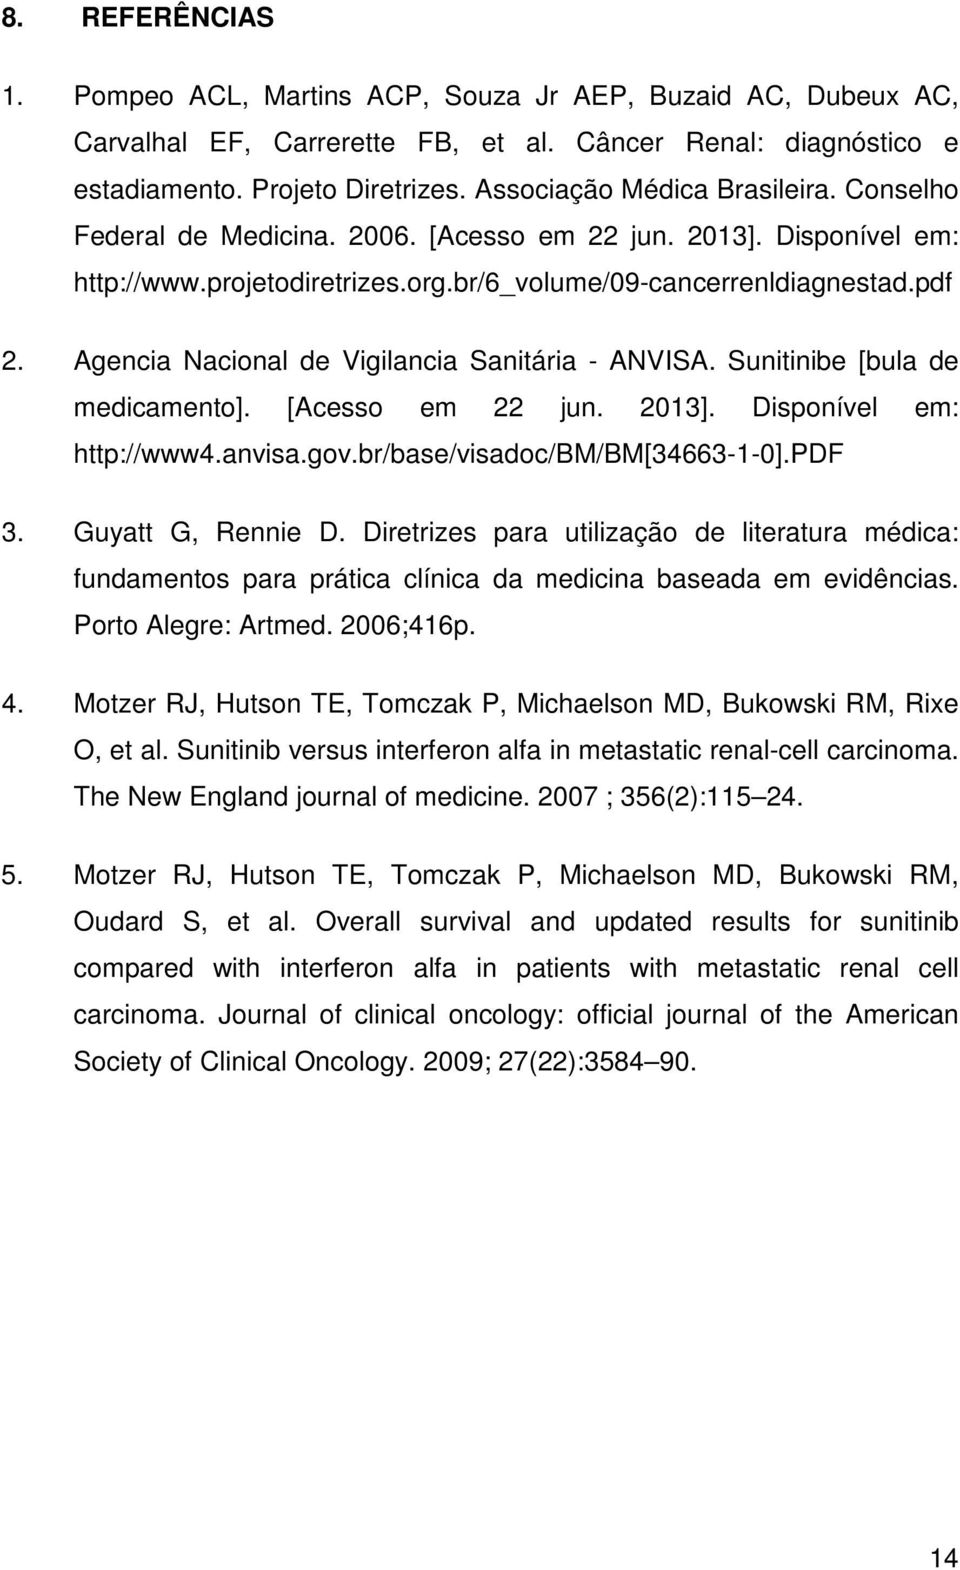 Agencia Nacional de Vigilancia Sanitária - ANVISA. Sunitinibe [bula de medicamento]. [Acesso em 22 jun. 2013]. Disponível em: http://www4.anvisa.gov.br/base/visadoc/bm/bm[34663-1-0].pdf 3.